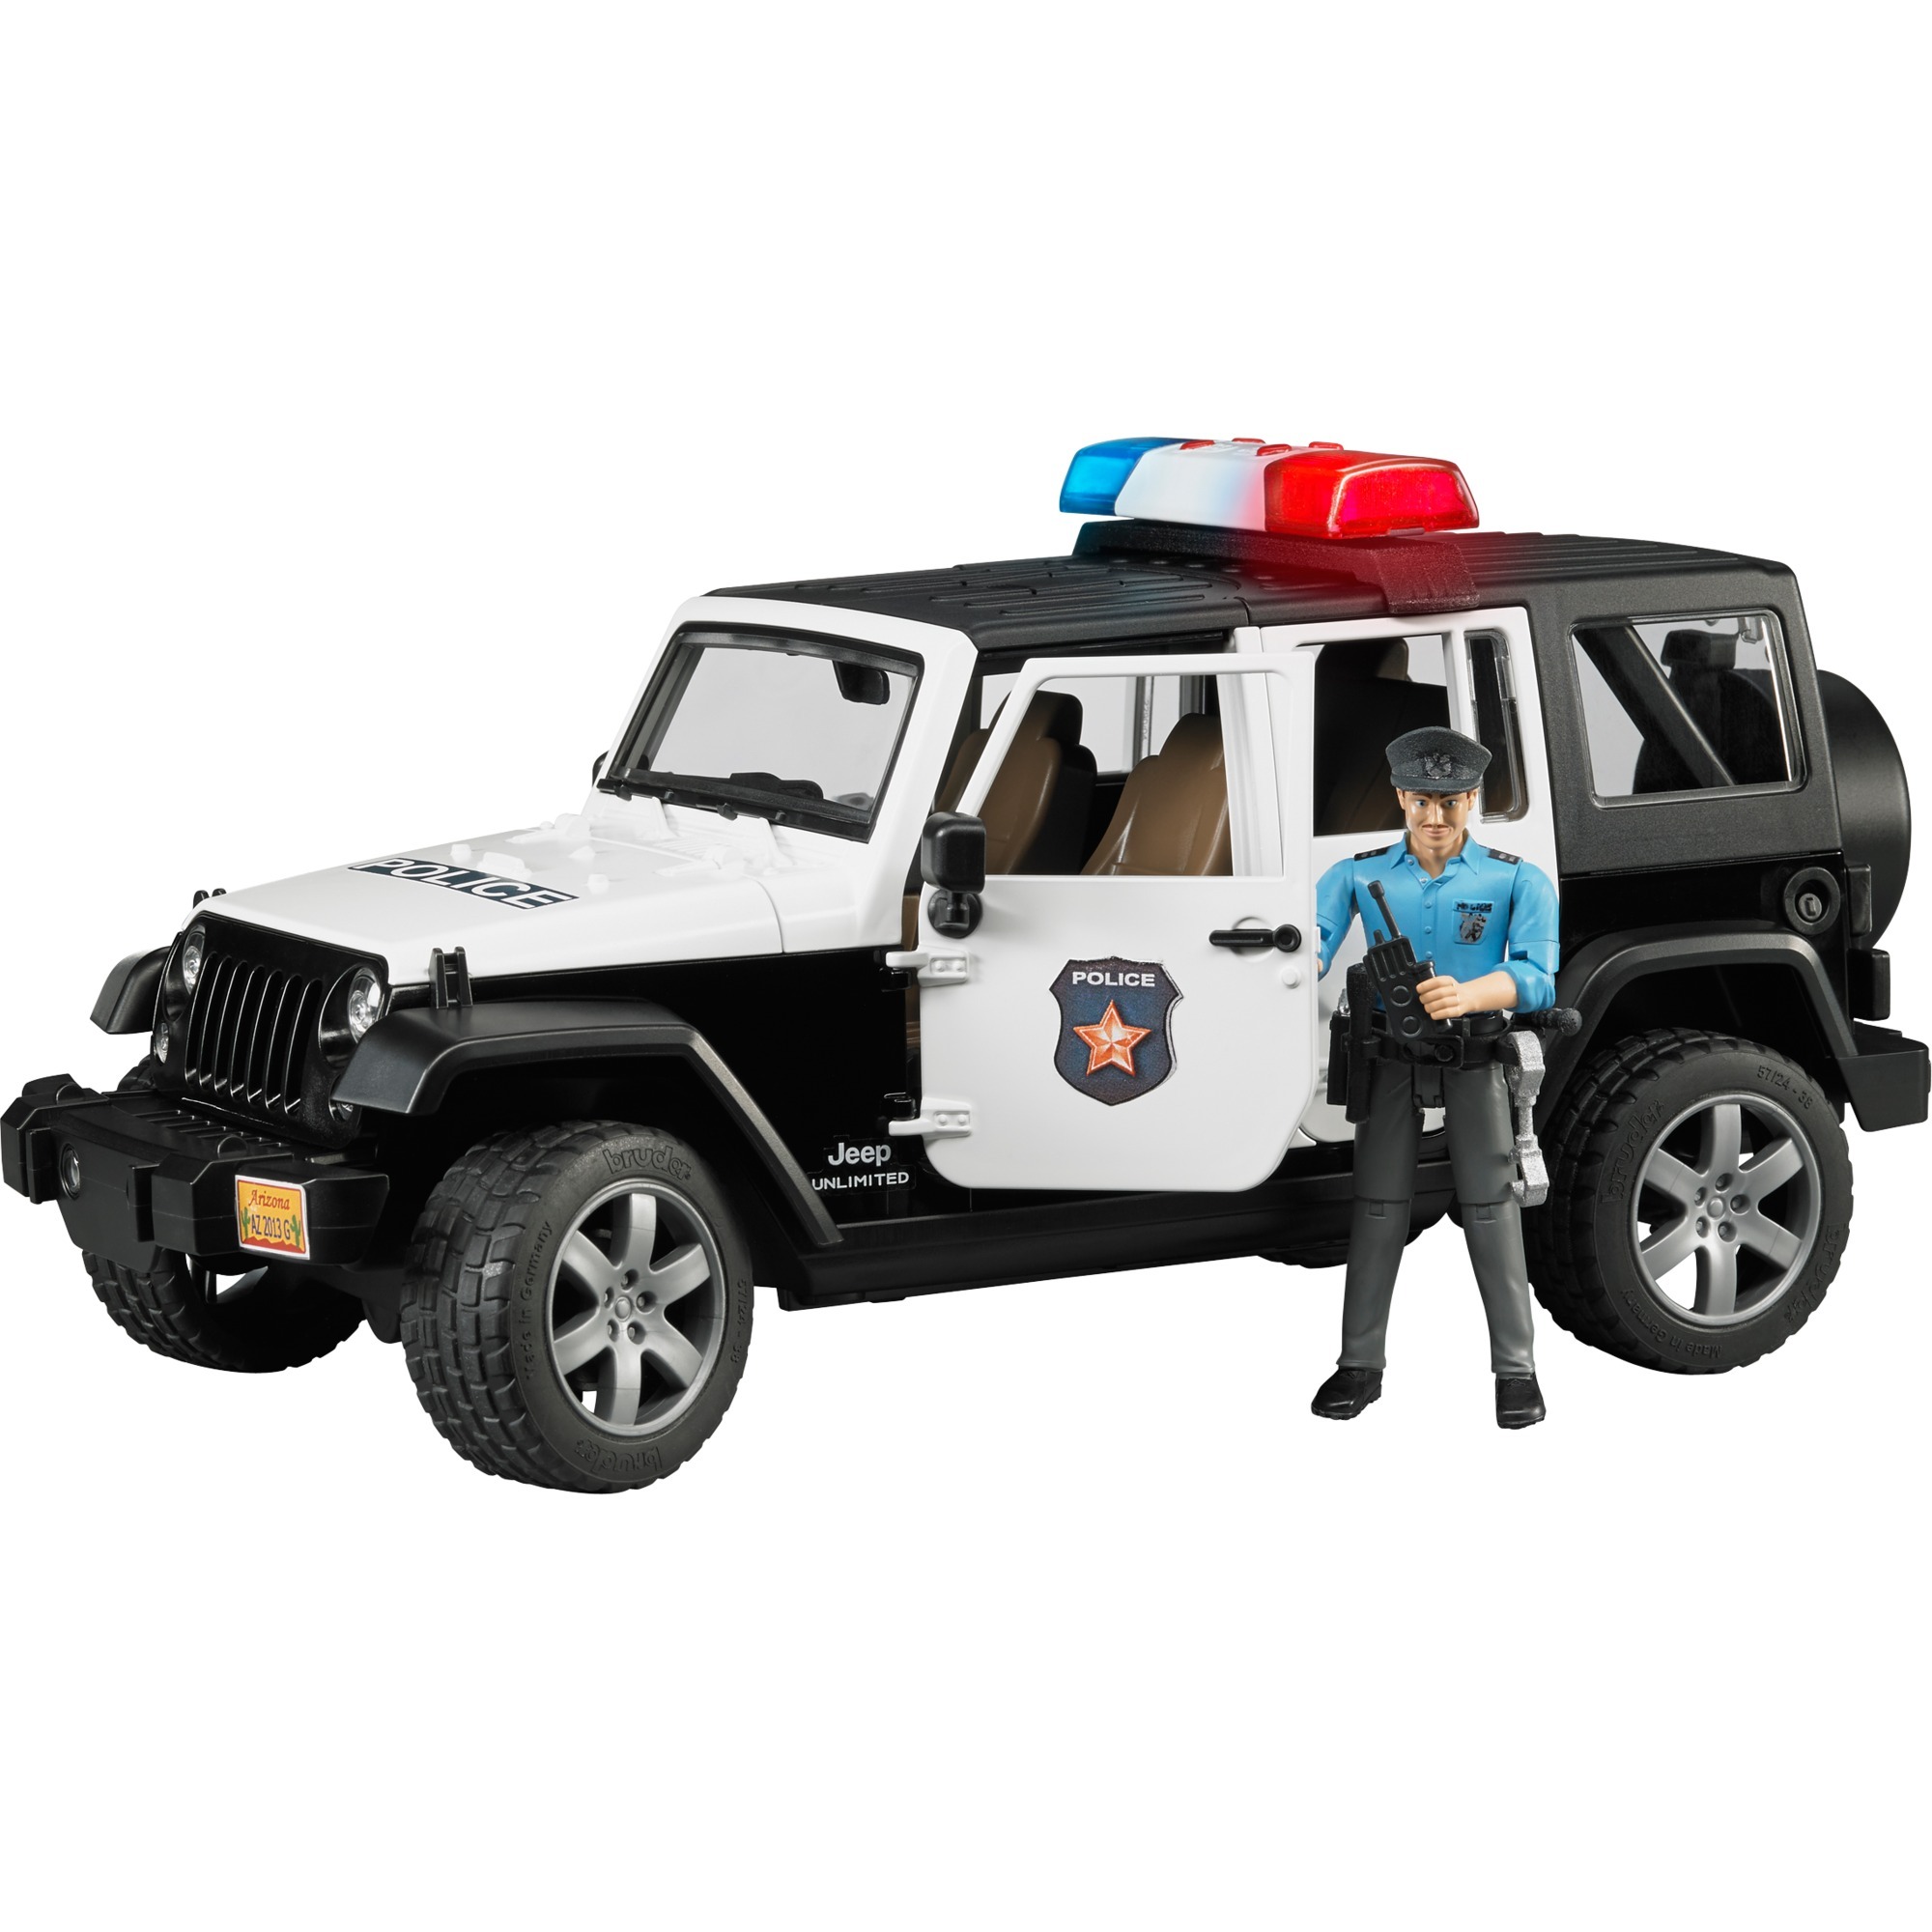 Bruder 02526 jeep wrangler ur polizei